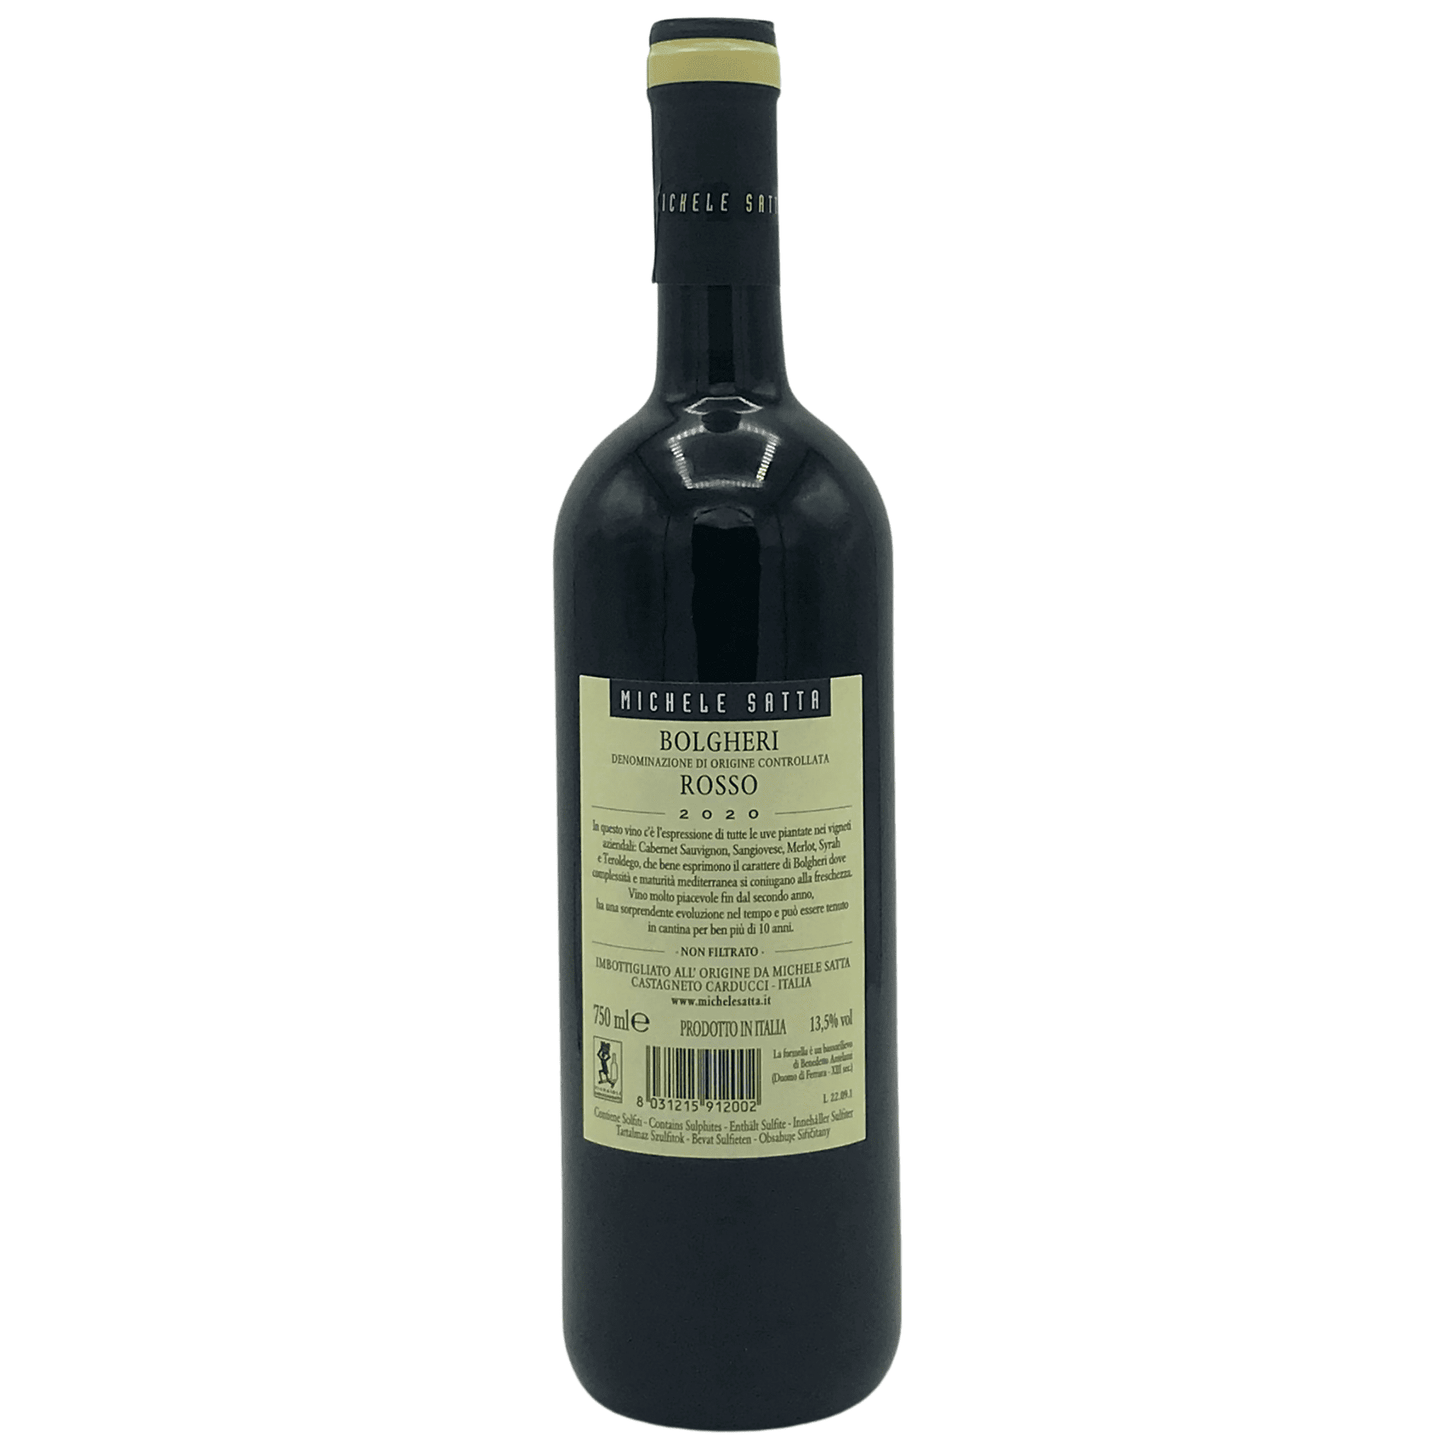 Bolgheri rosso DOC Michele Satta bottiglia 0,75 l retro